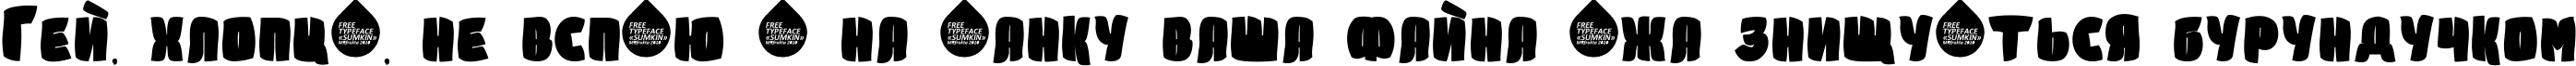 Пример написания шрифтом Sumkin freetype MRfrukta 2010 текста на украинском